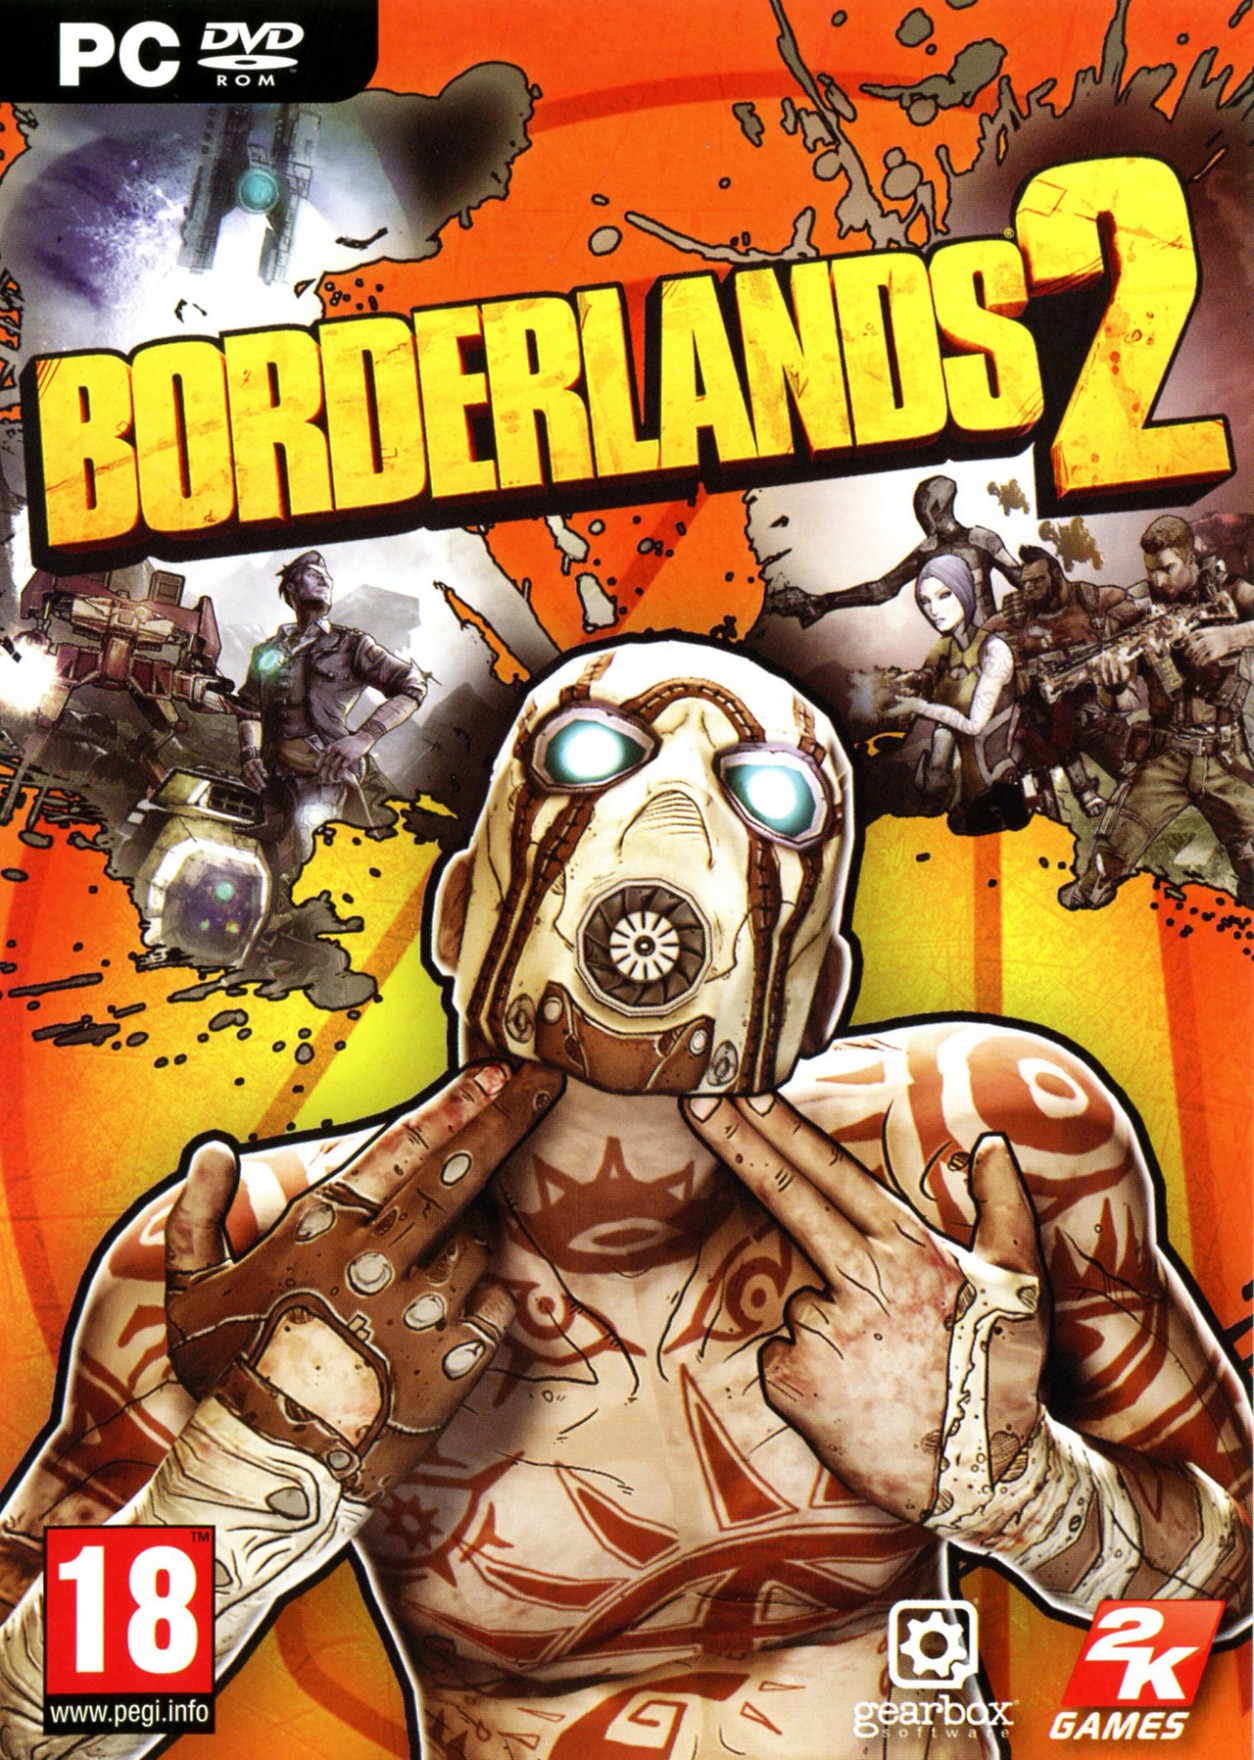 Borderlands 2 Free Download